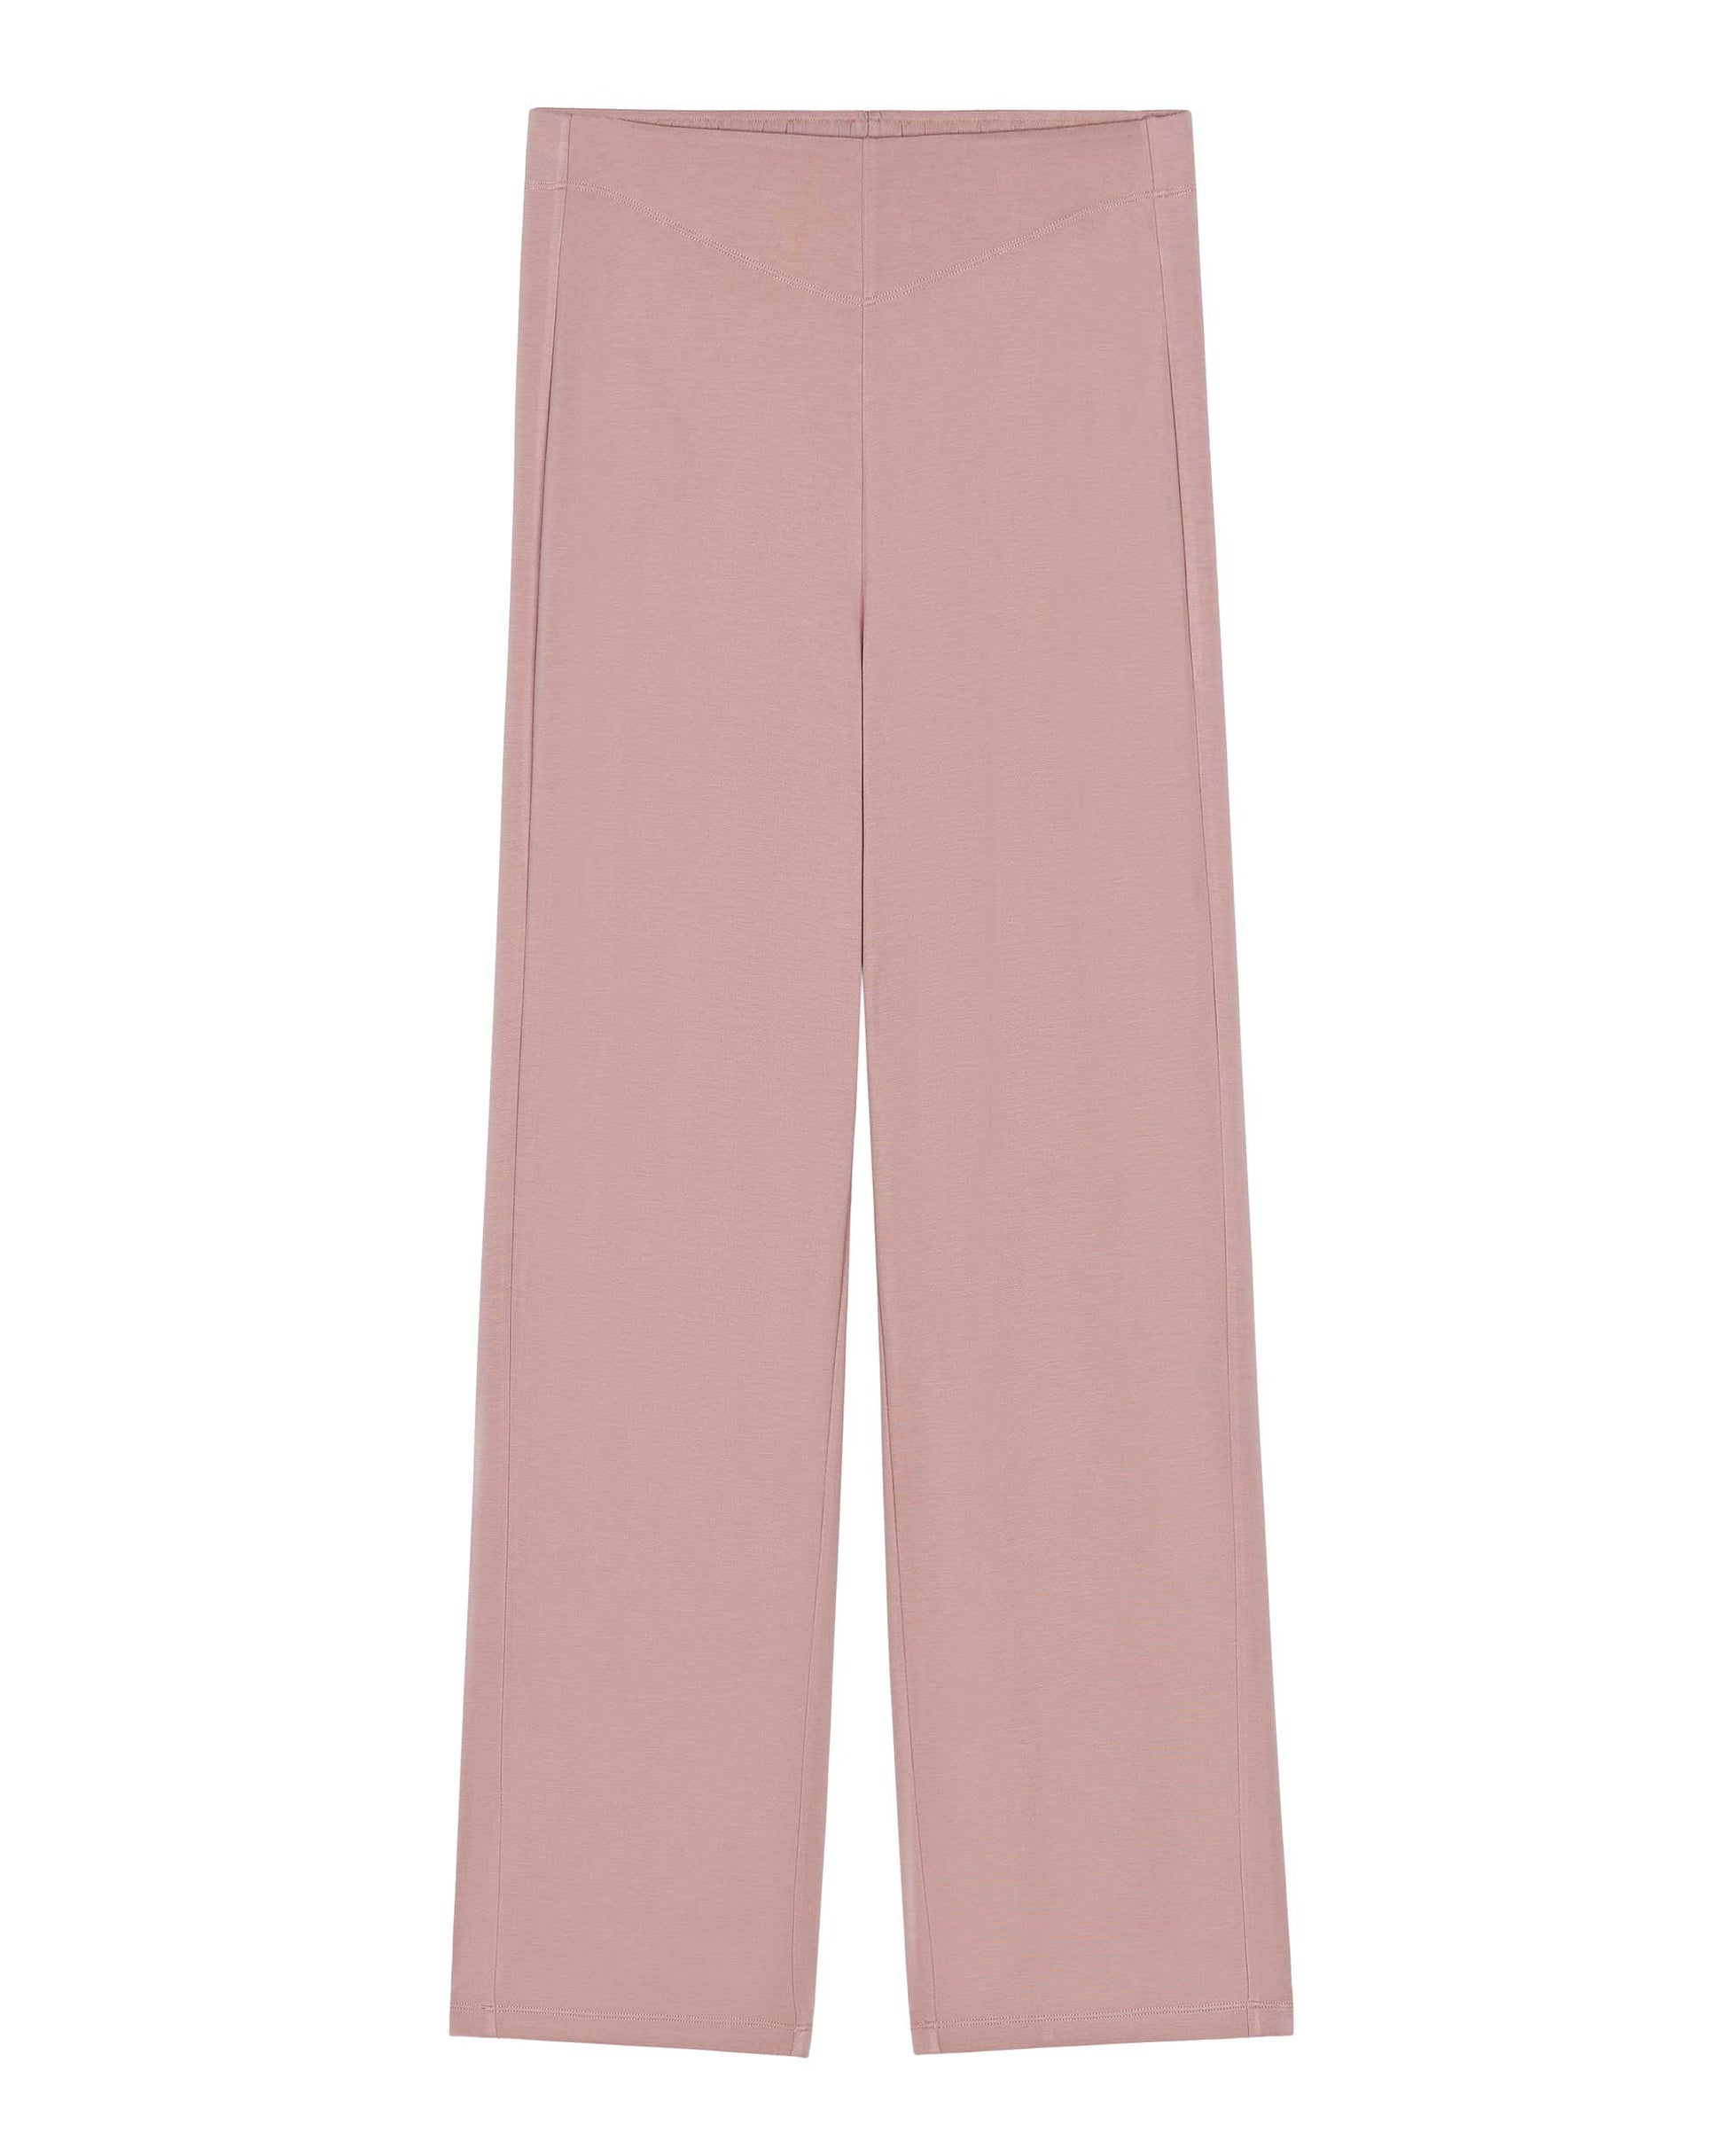 A pink pajama pants